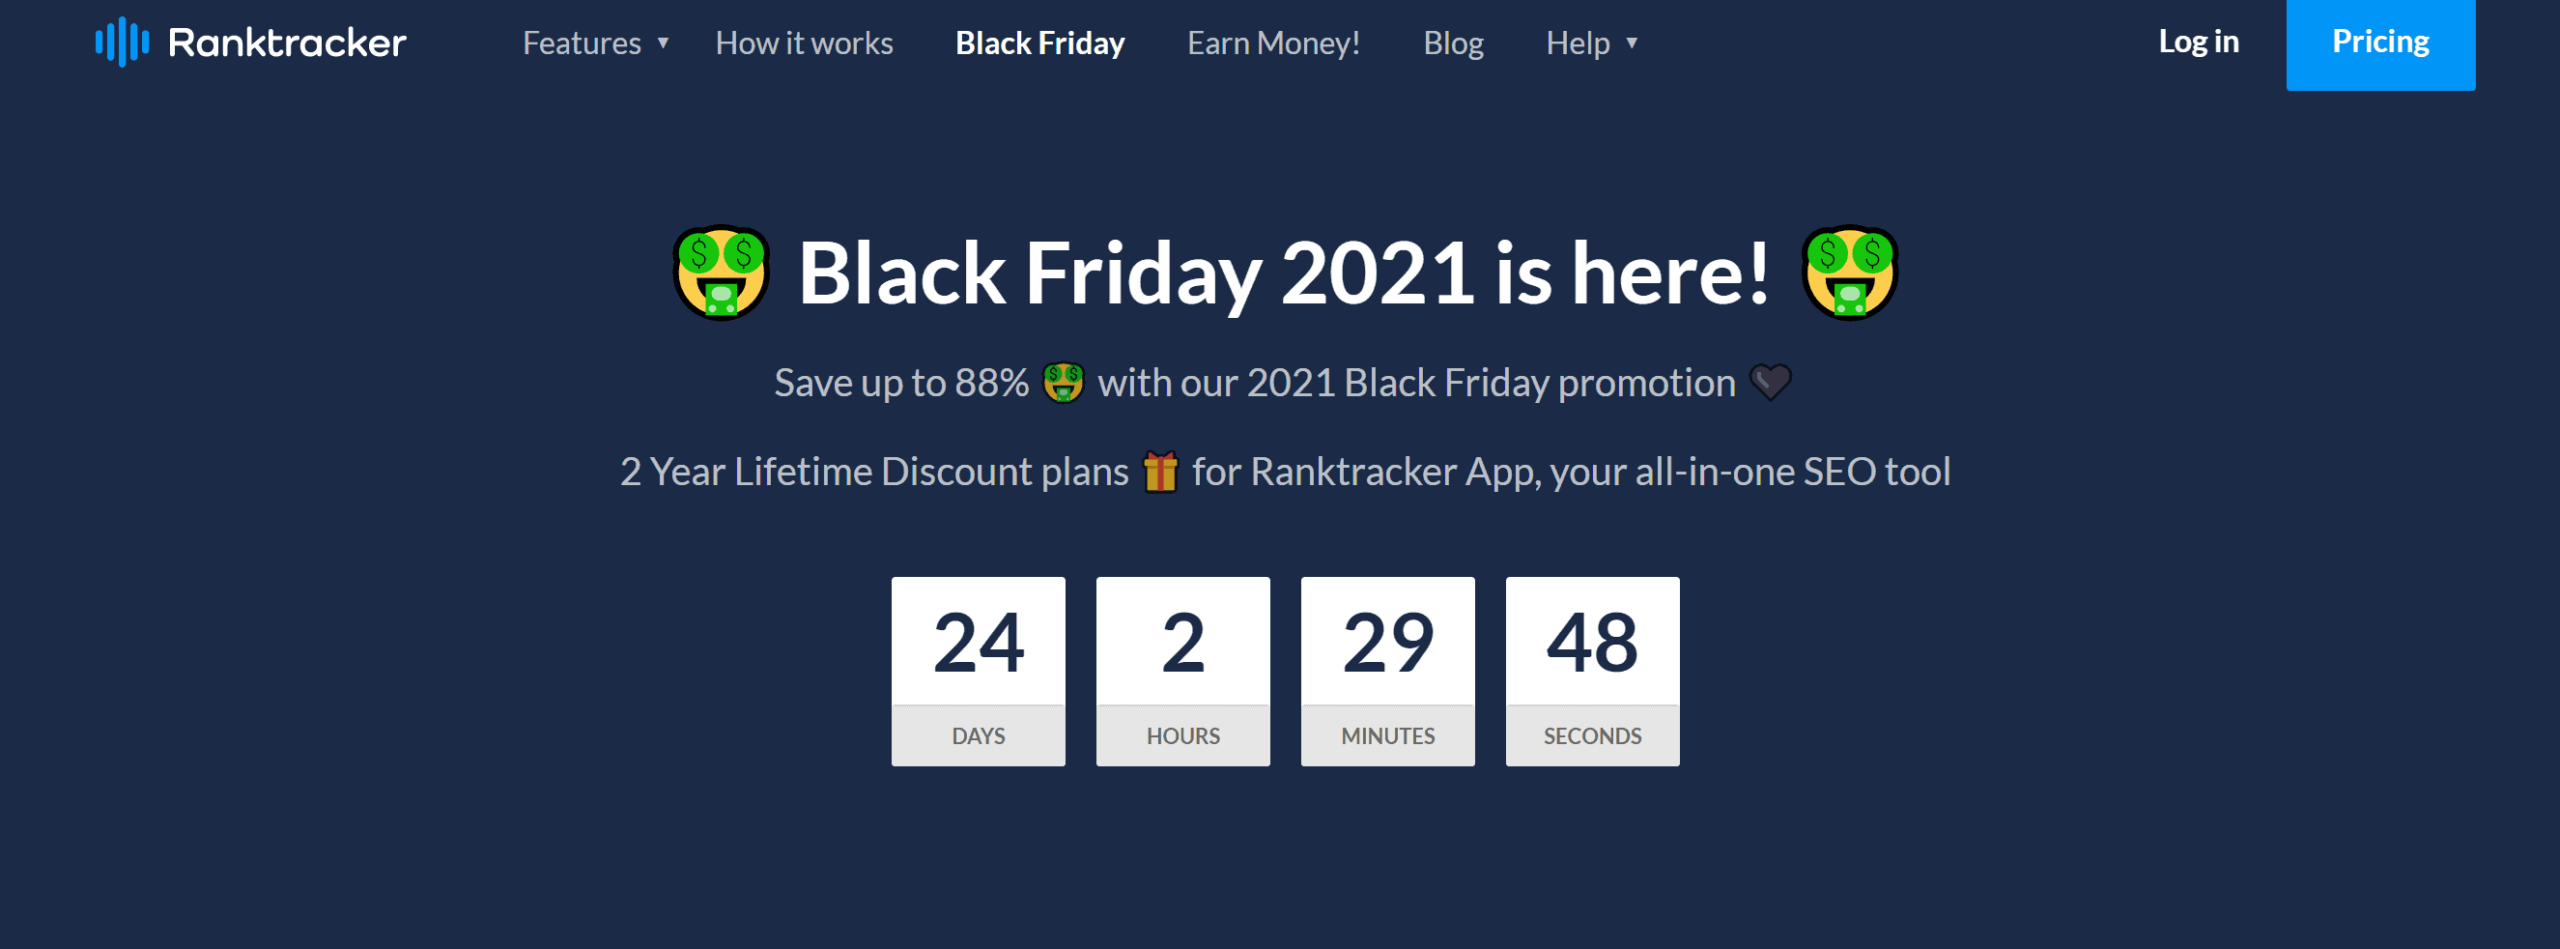 Ranktracker Black Friday Deals